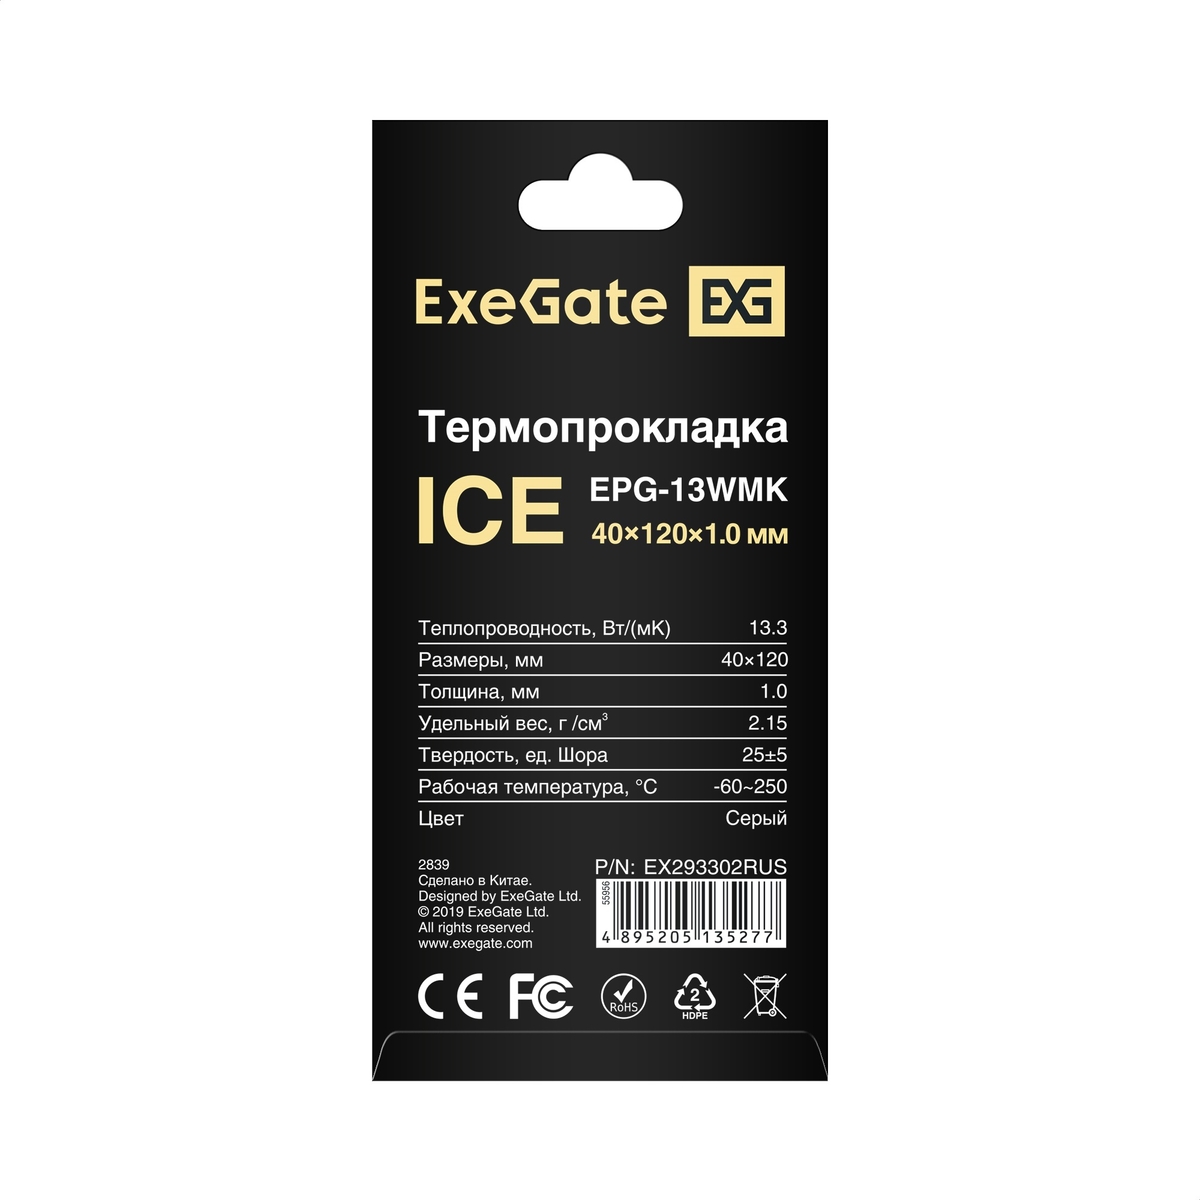  ExeGate Ice EPG-13WMK 40x120x1.0